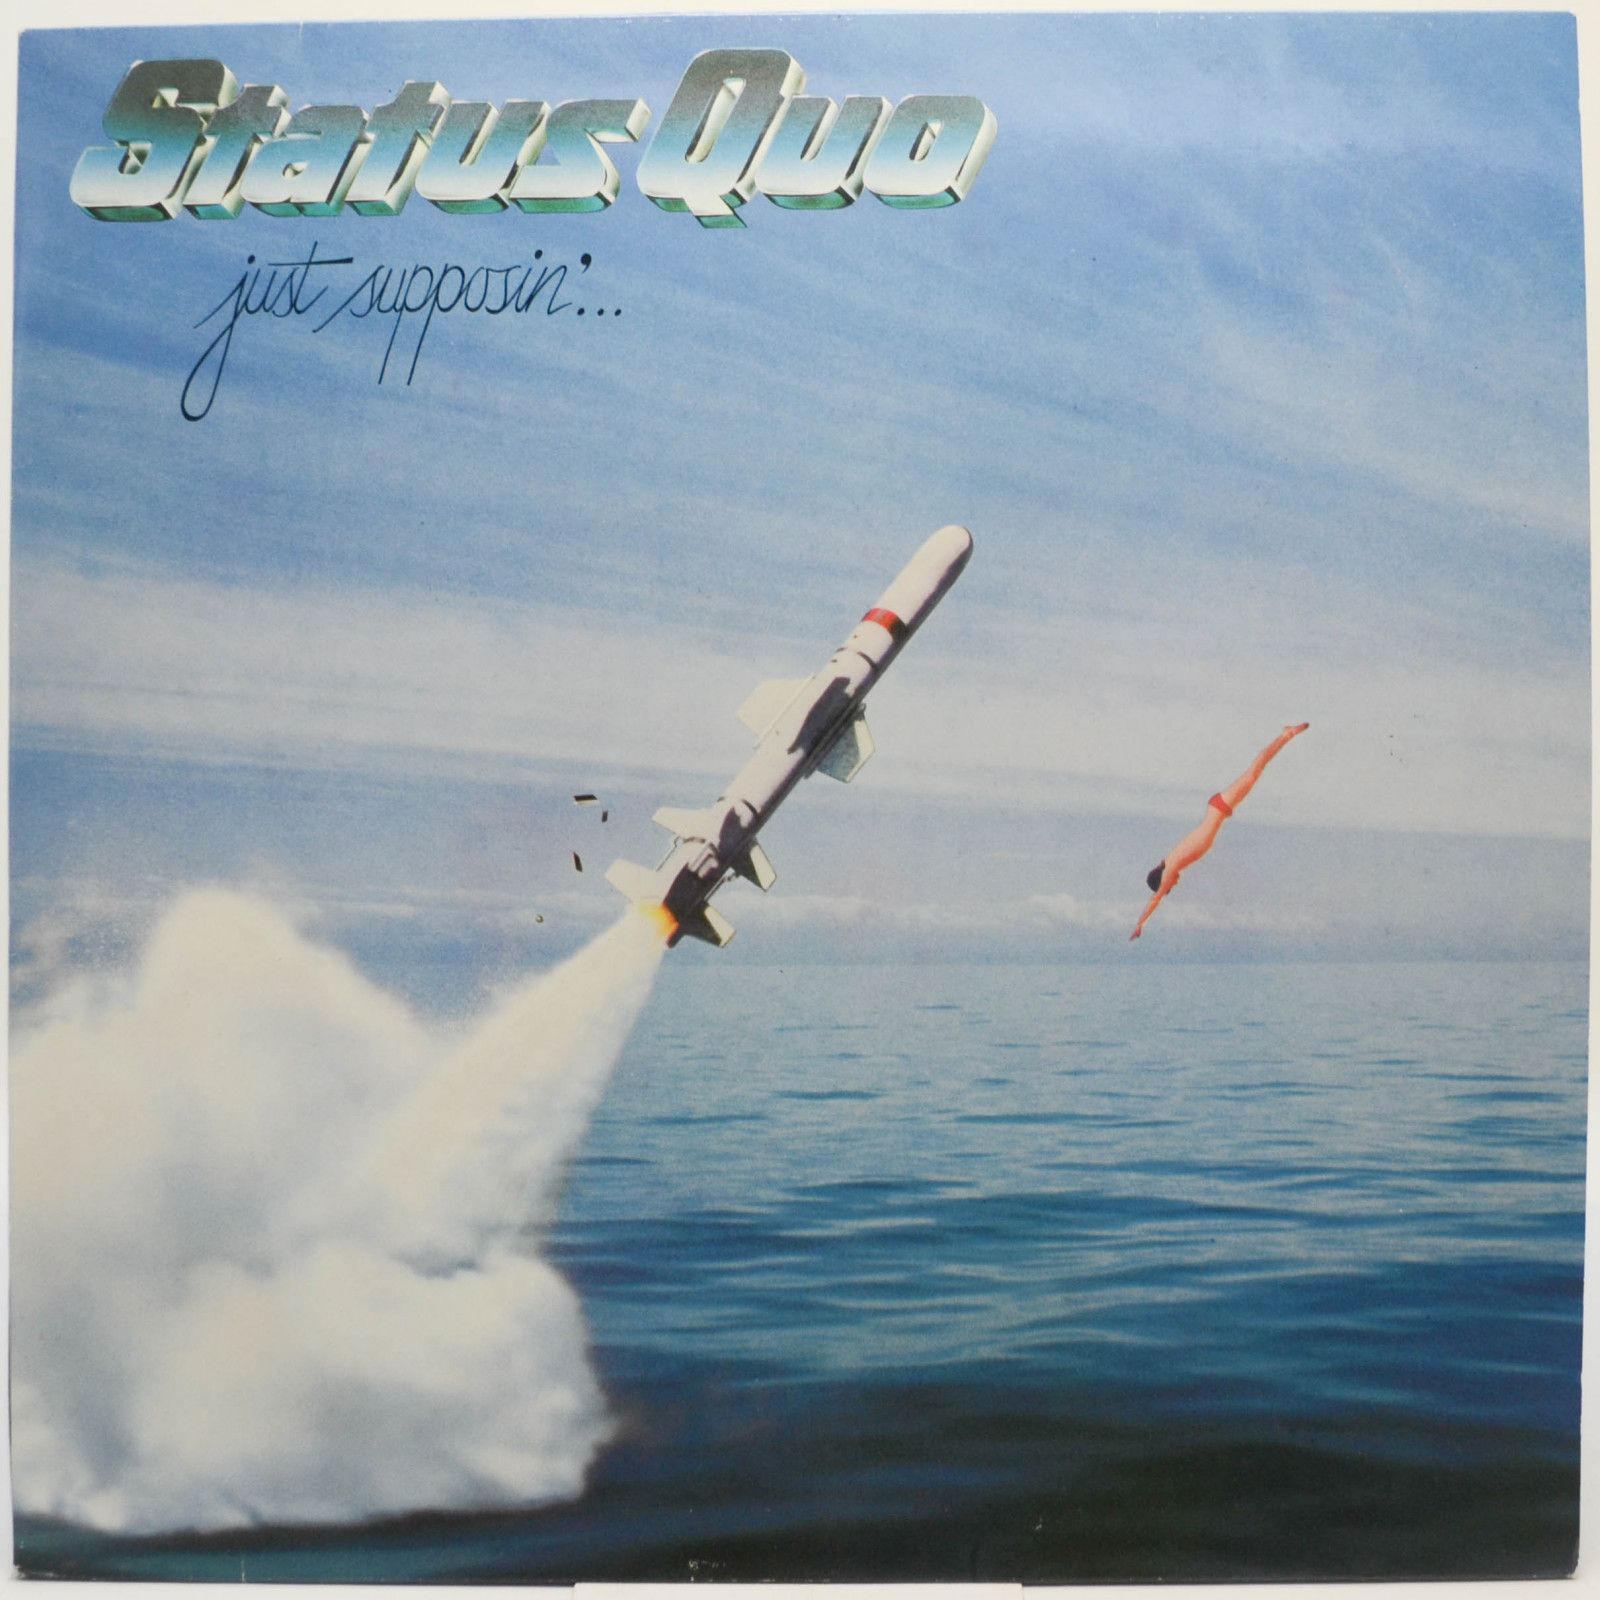 Status Quo — Just Supposin'..., 1980